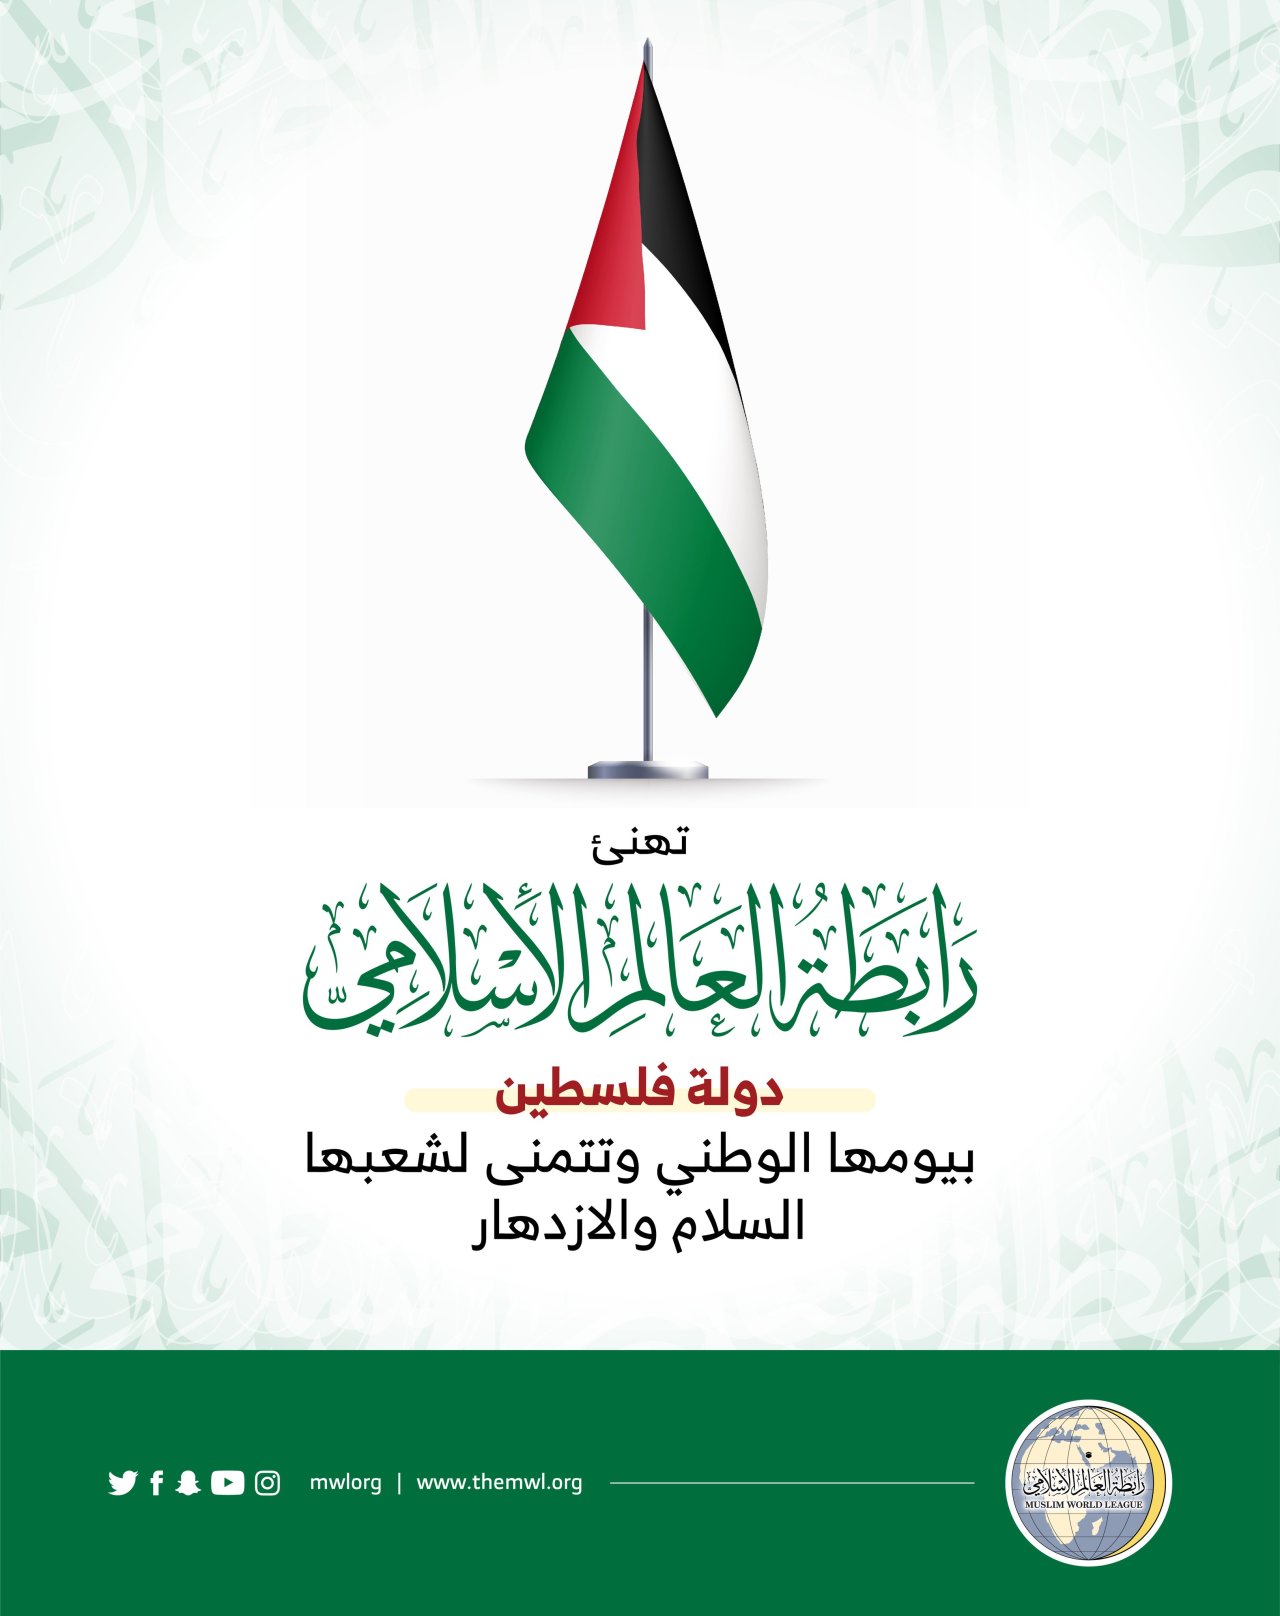 ‏تهنئة من رابطة العالم الإسلامي‬⁩ لشعب فلسطين‬⁩ بذكرى اليوم الوطني